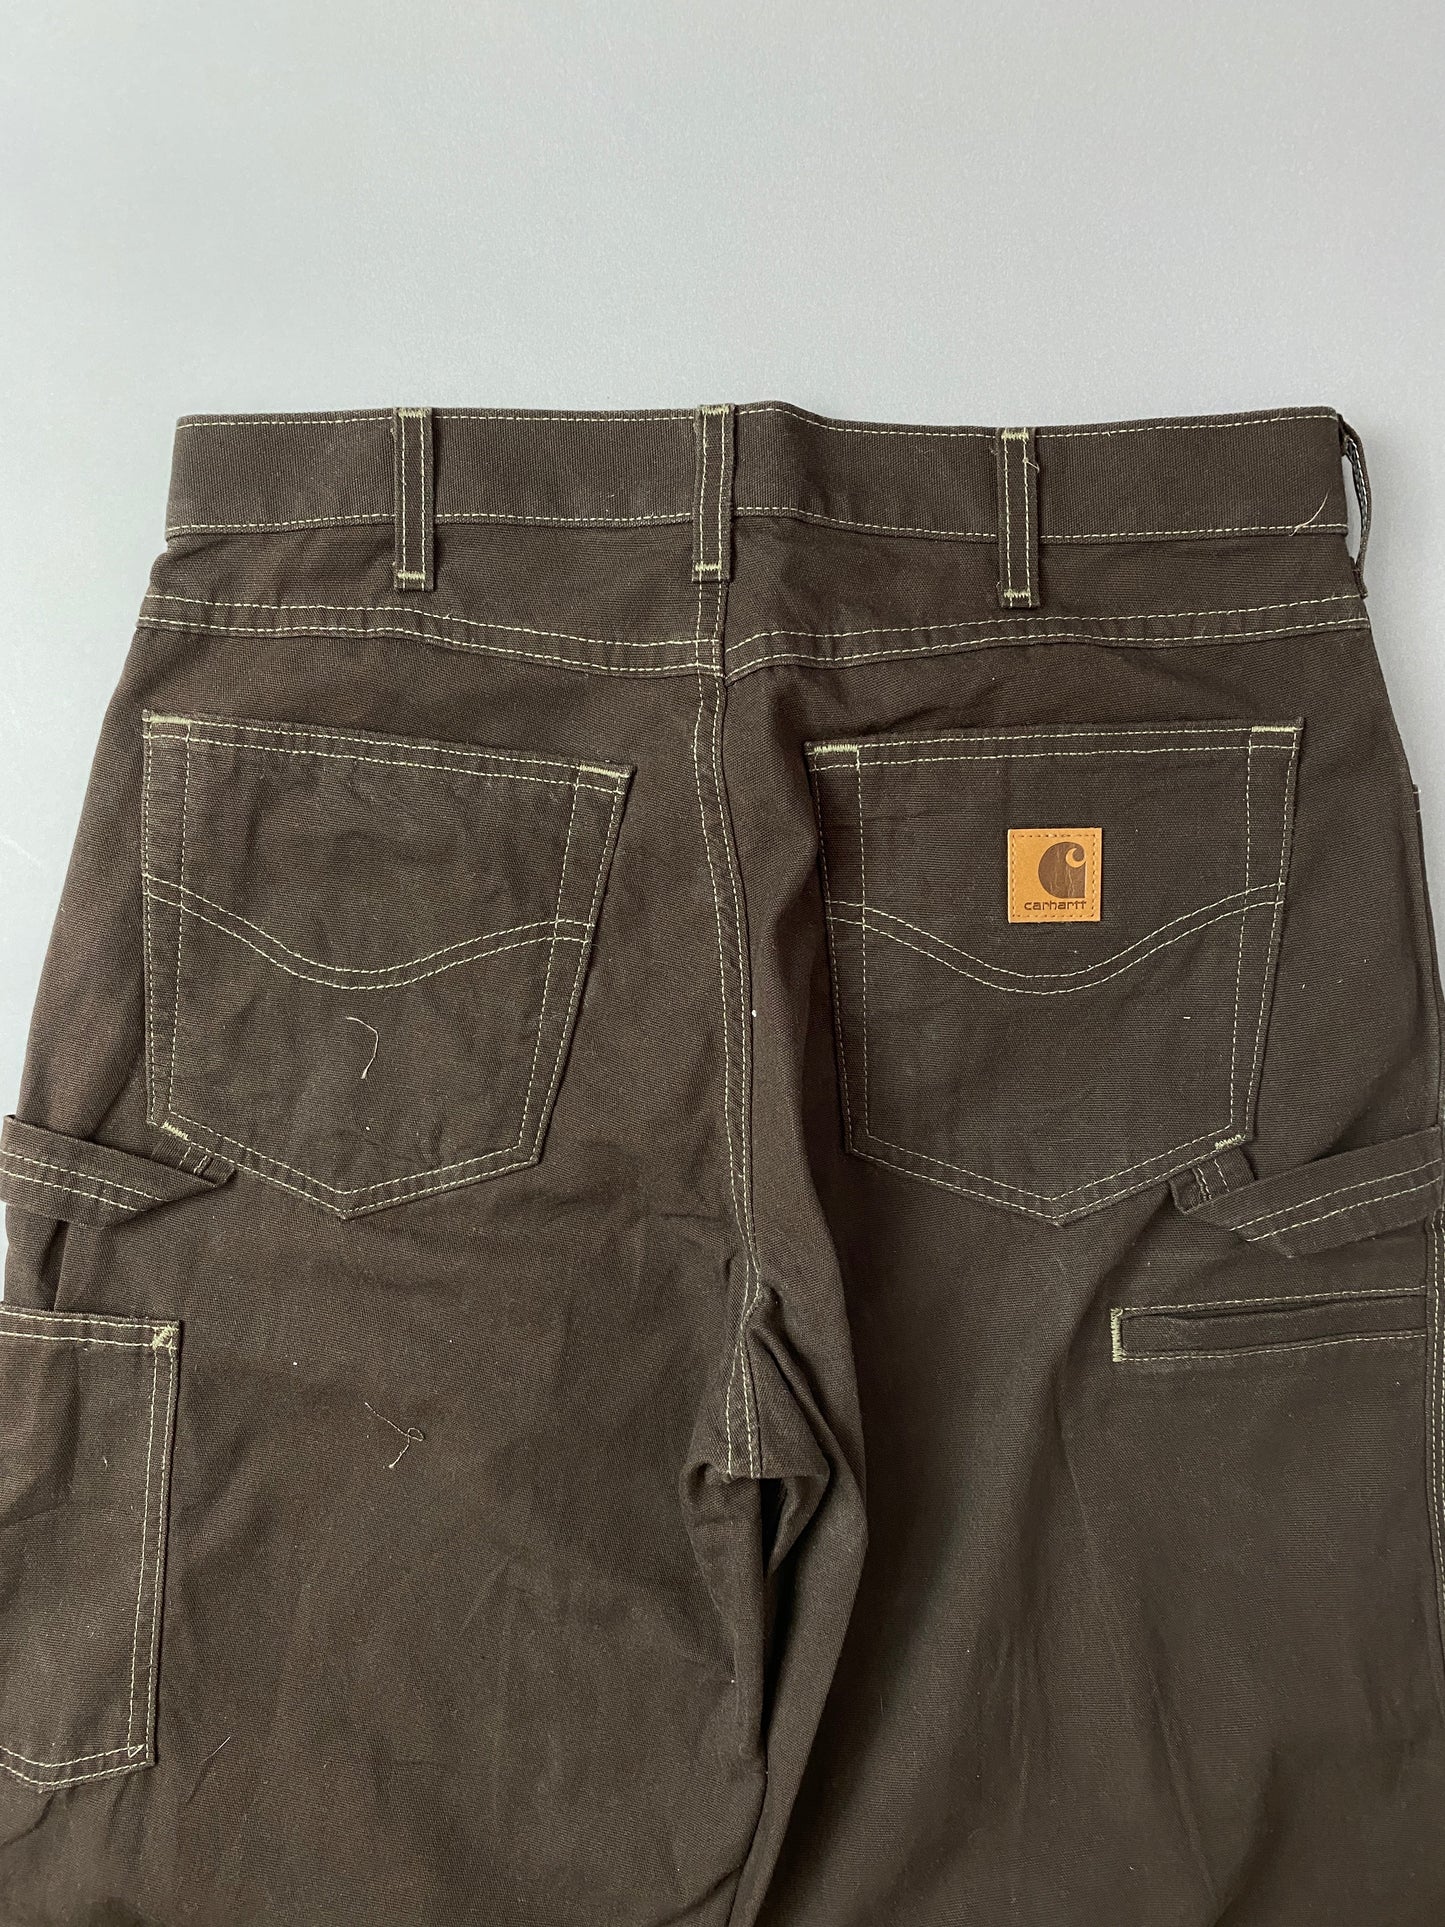 Pantalones Carhartt Carpenter - 32 x 32